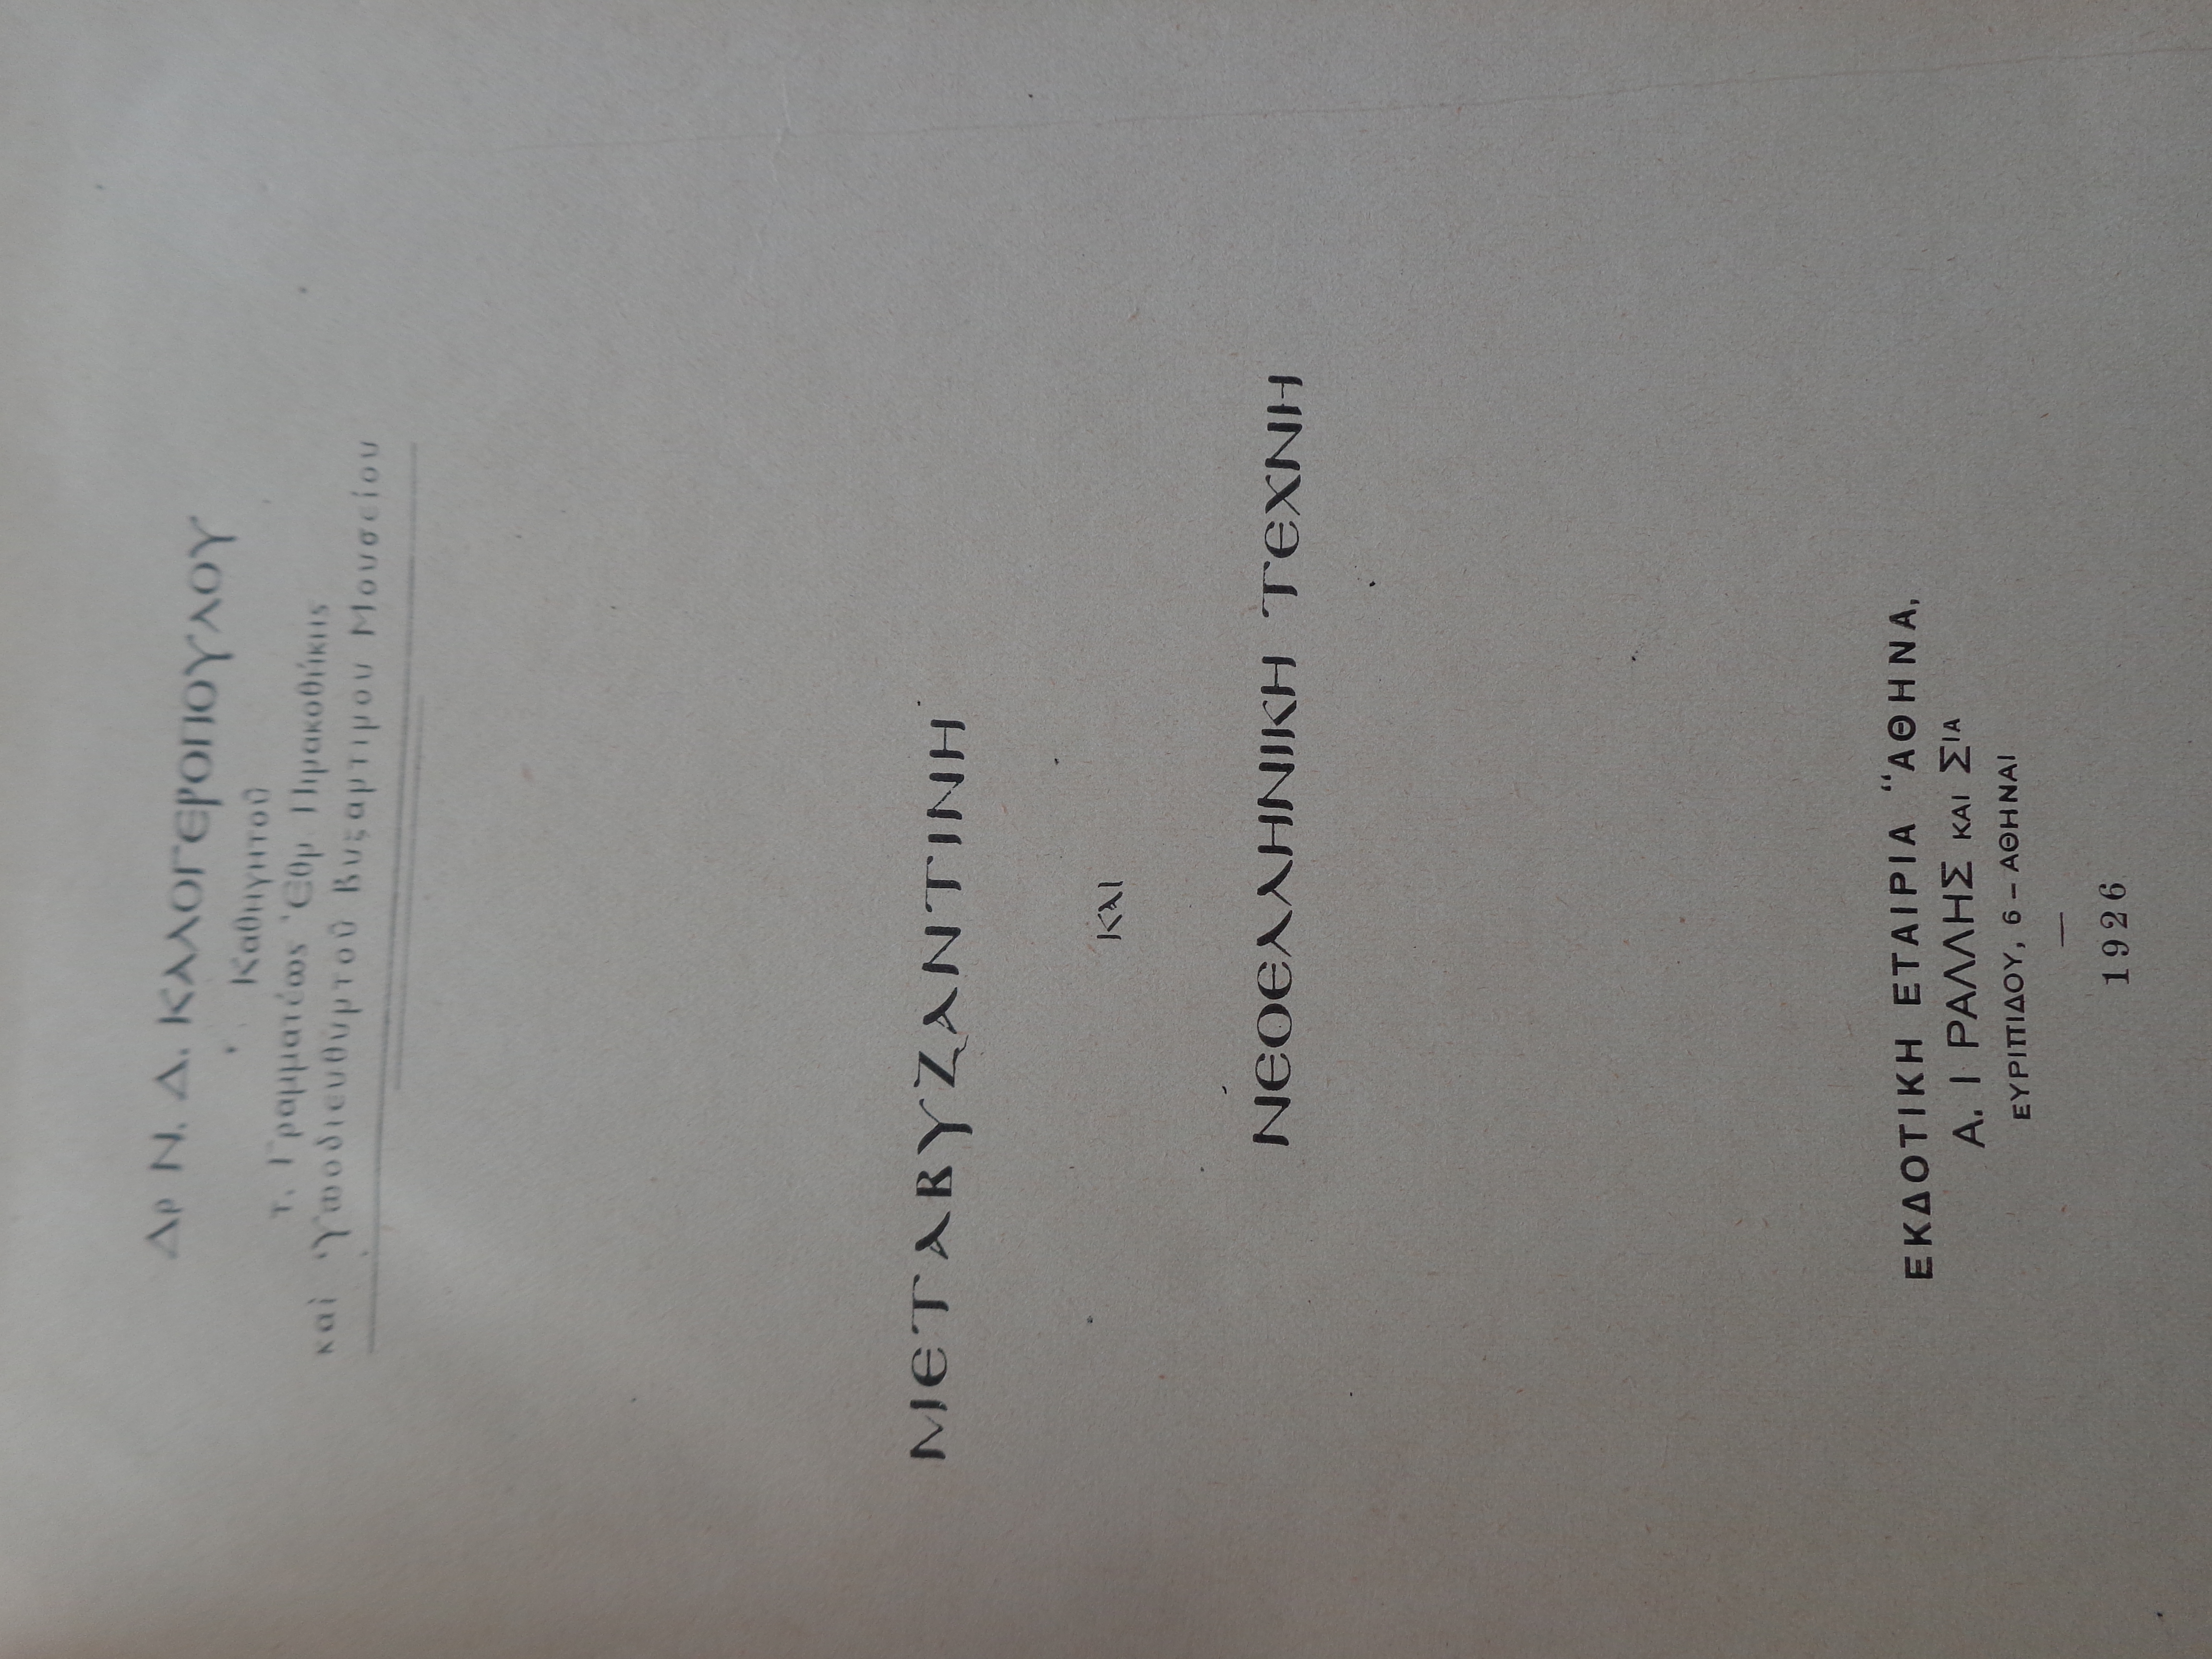 ΝΙΚΟΣ ΚΑΛΟΓΕΡΟΠΟΥΛΟΣ Μεταβυζαντινή και νεοελληνική τέχνη. Εκδοτική Εταιρία Αθηνά, 1926